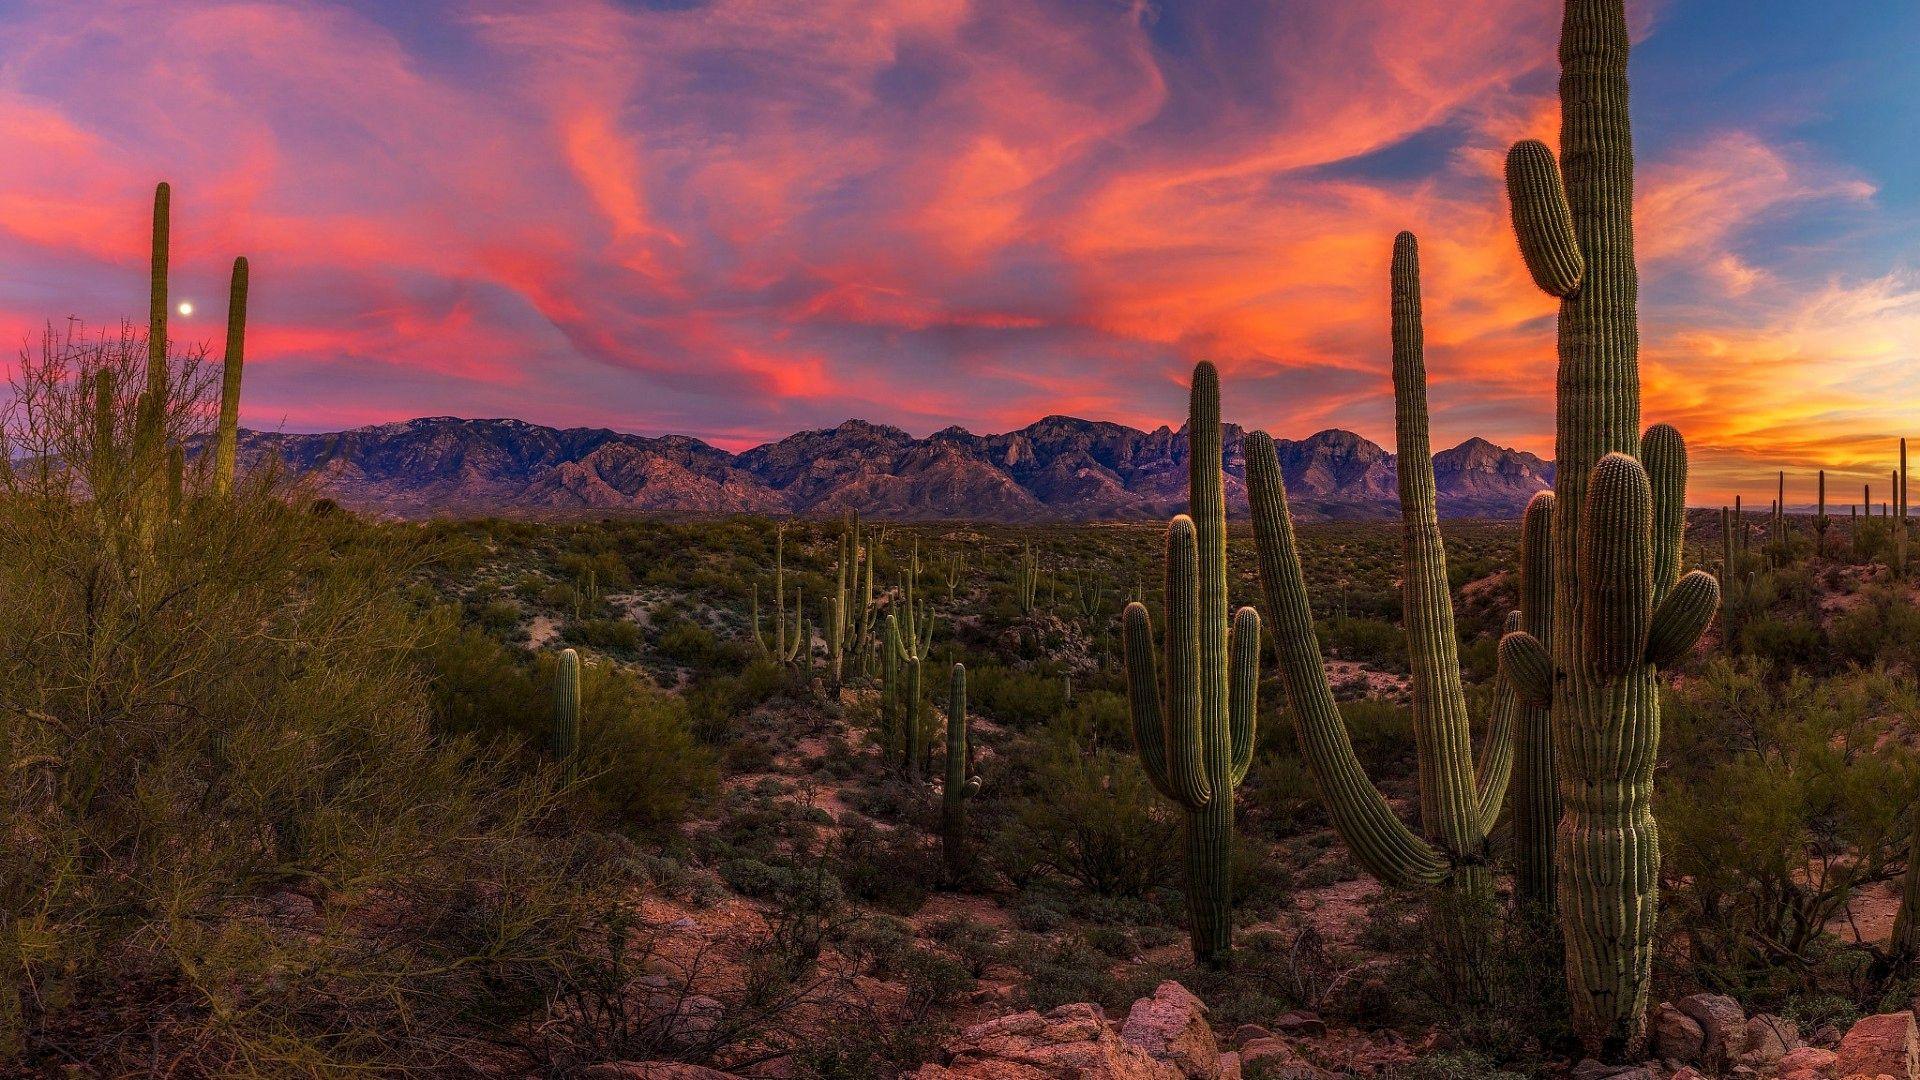 Hình nền sa mạc Arizona là sự kết hợp hoàn hảo giữa không gian trống trải và đầy màu sắc của thiên nhiên đang chờ đón bạn khám phá. Nhấp chuột vào hình ảnh để cảm nhận ngay những trải nghiệm khó quên trên vùng đất mới lạ này.